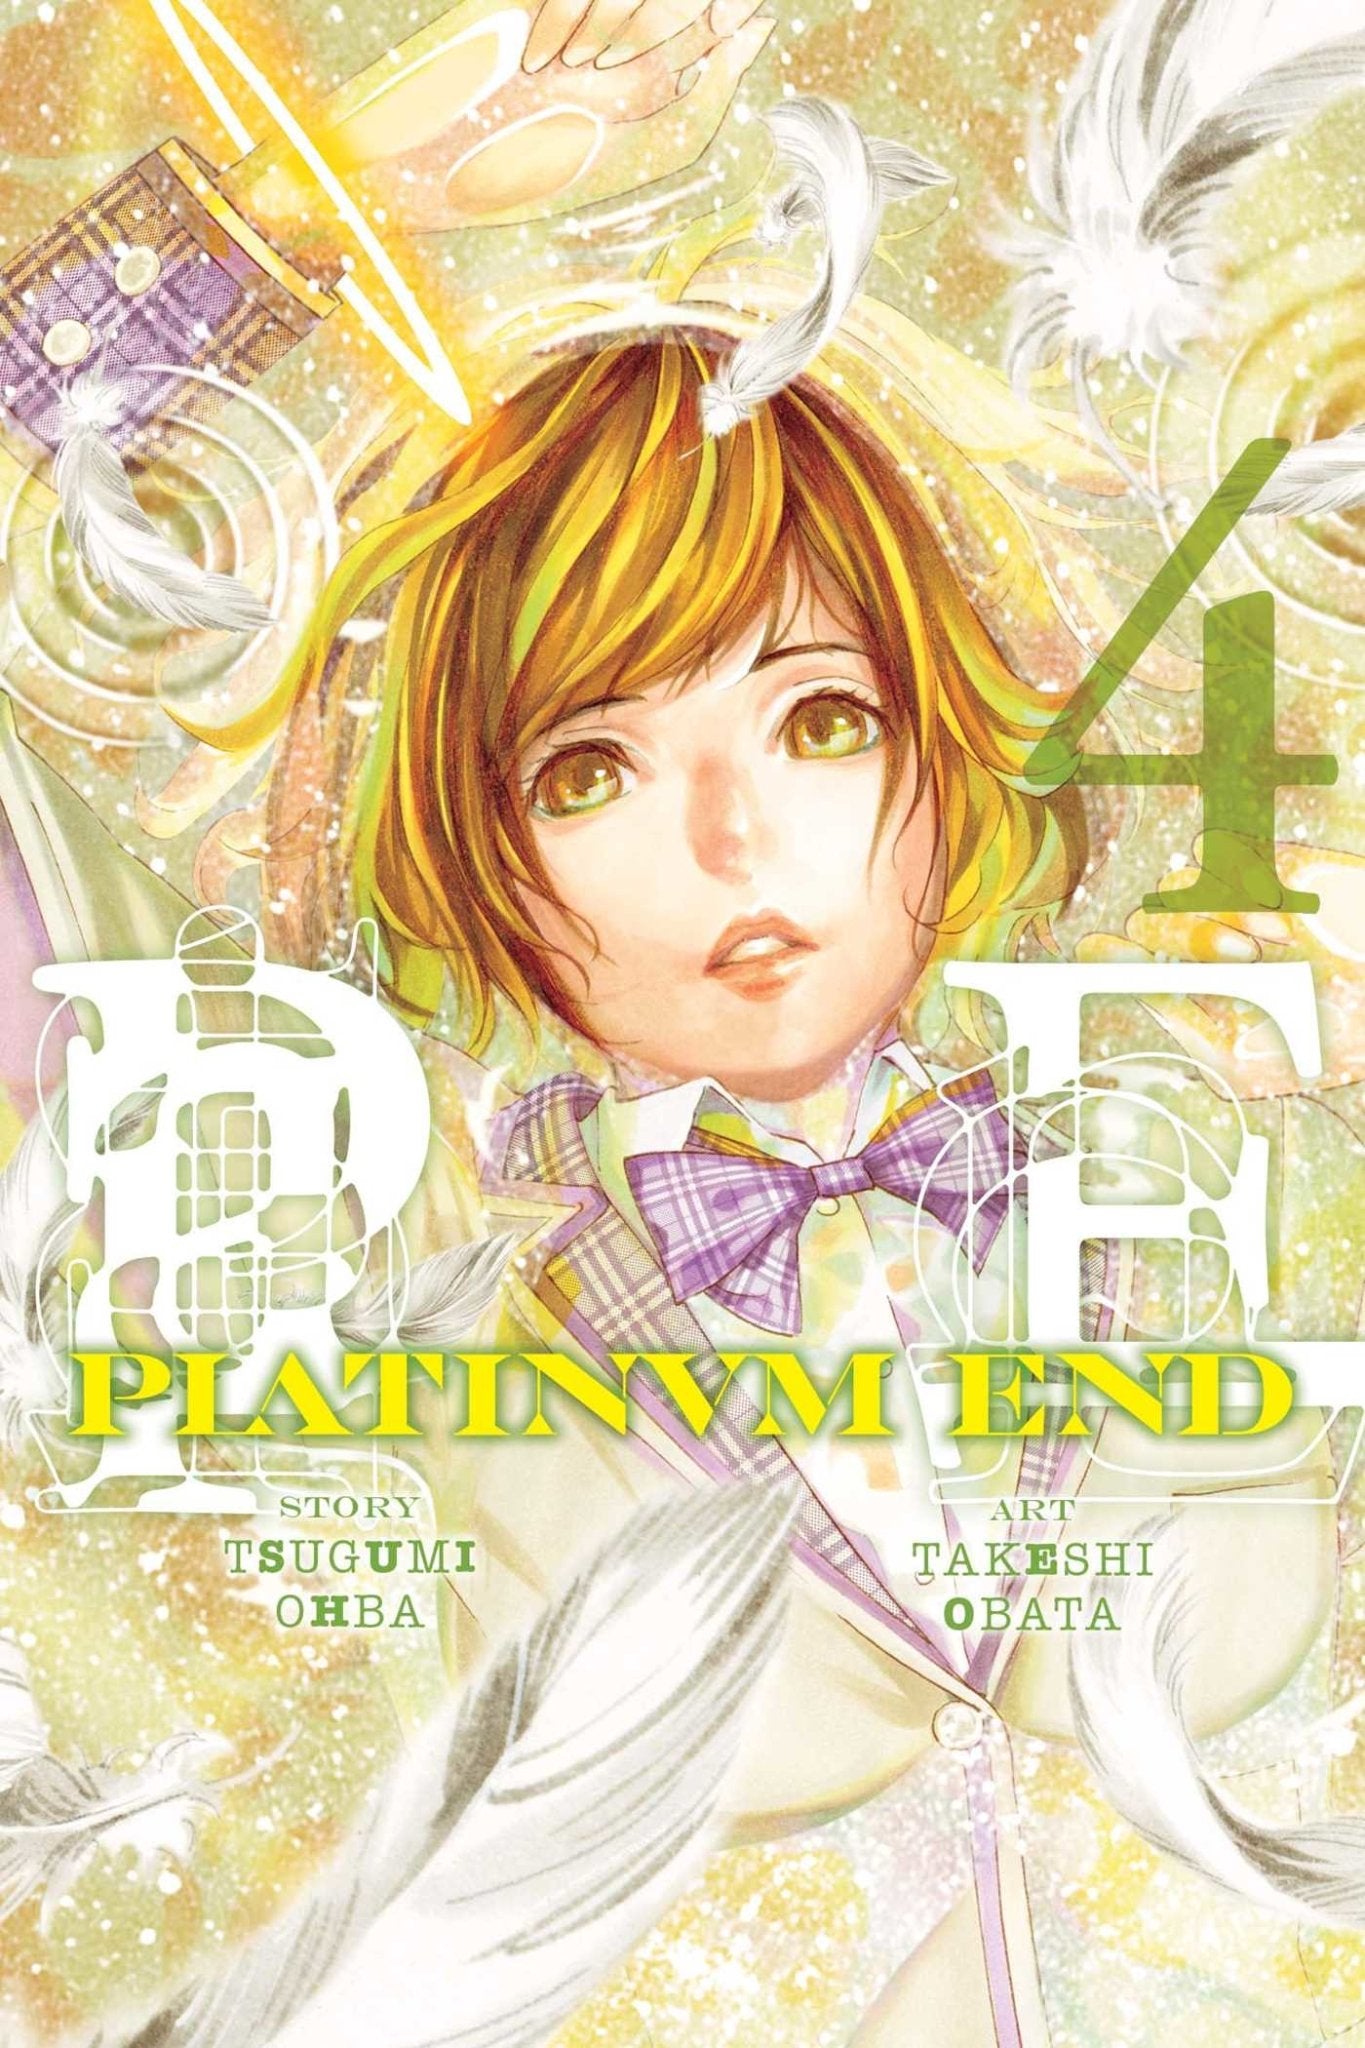 Platinum End, Vol. 4 by Takeshi Obata [Paperback] - LV'S Global Media